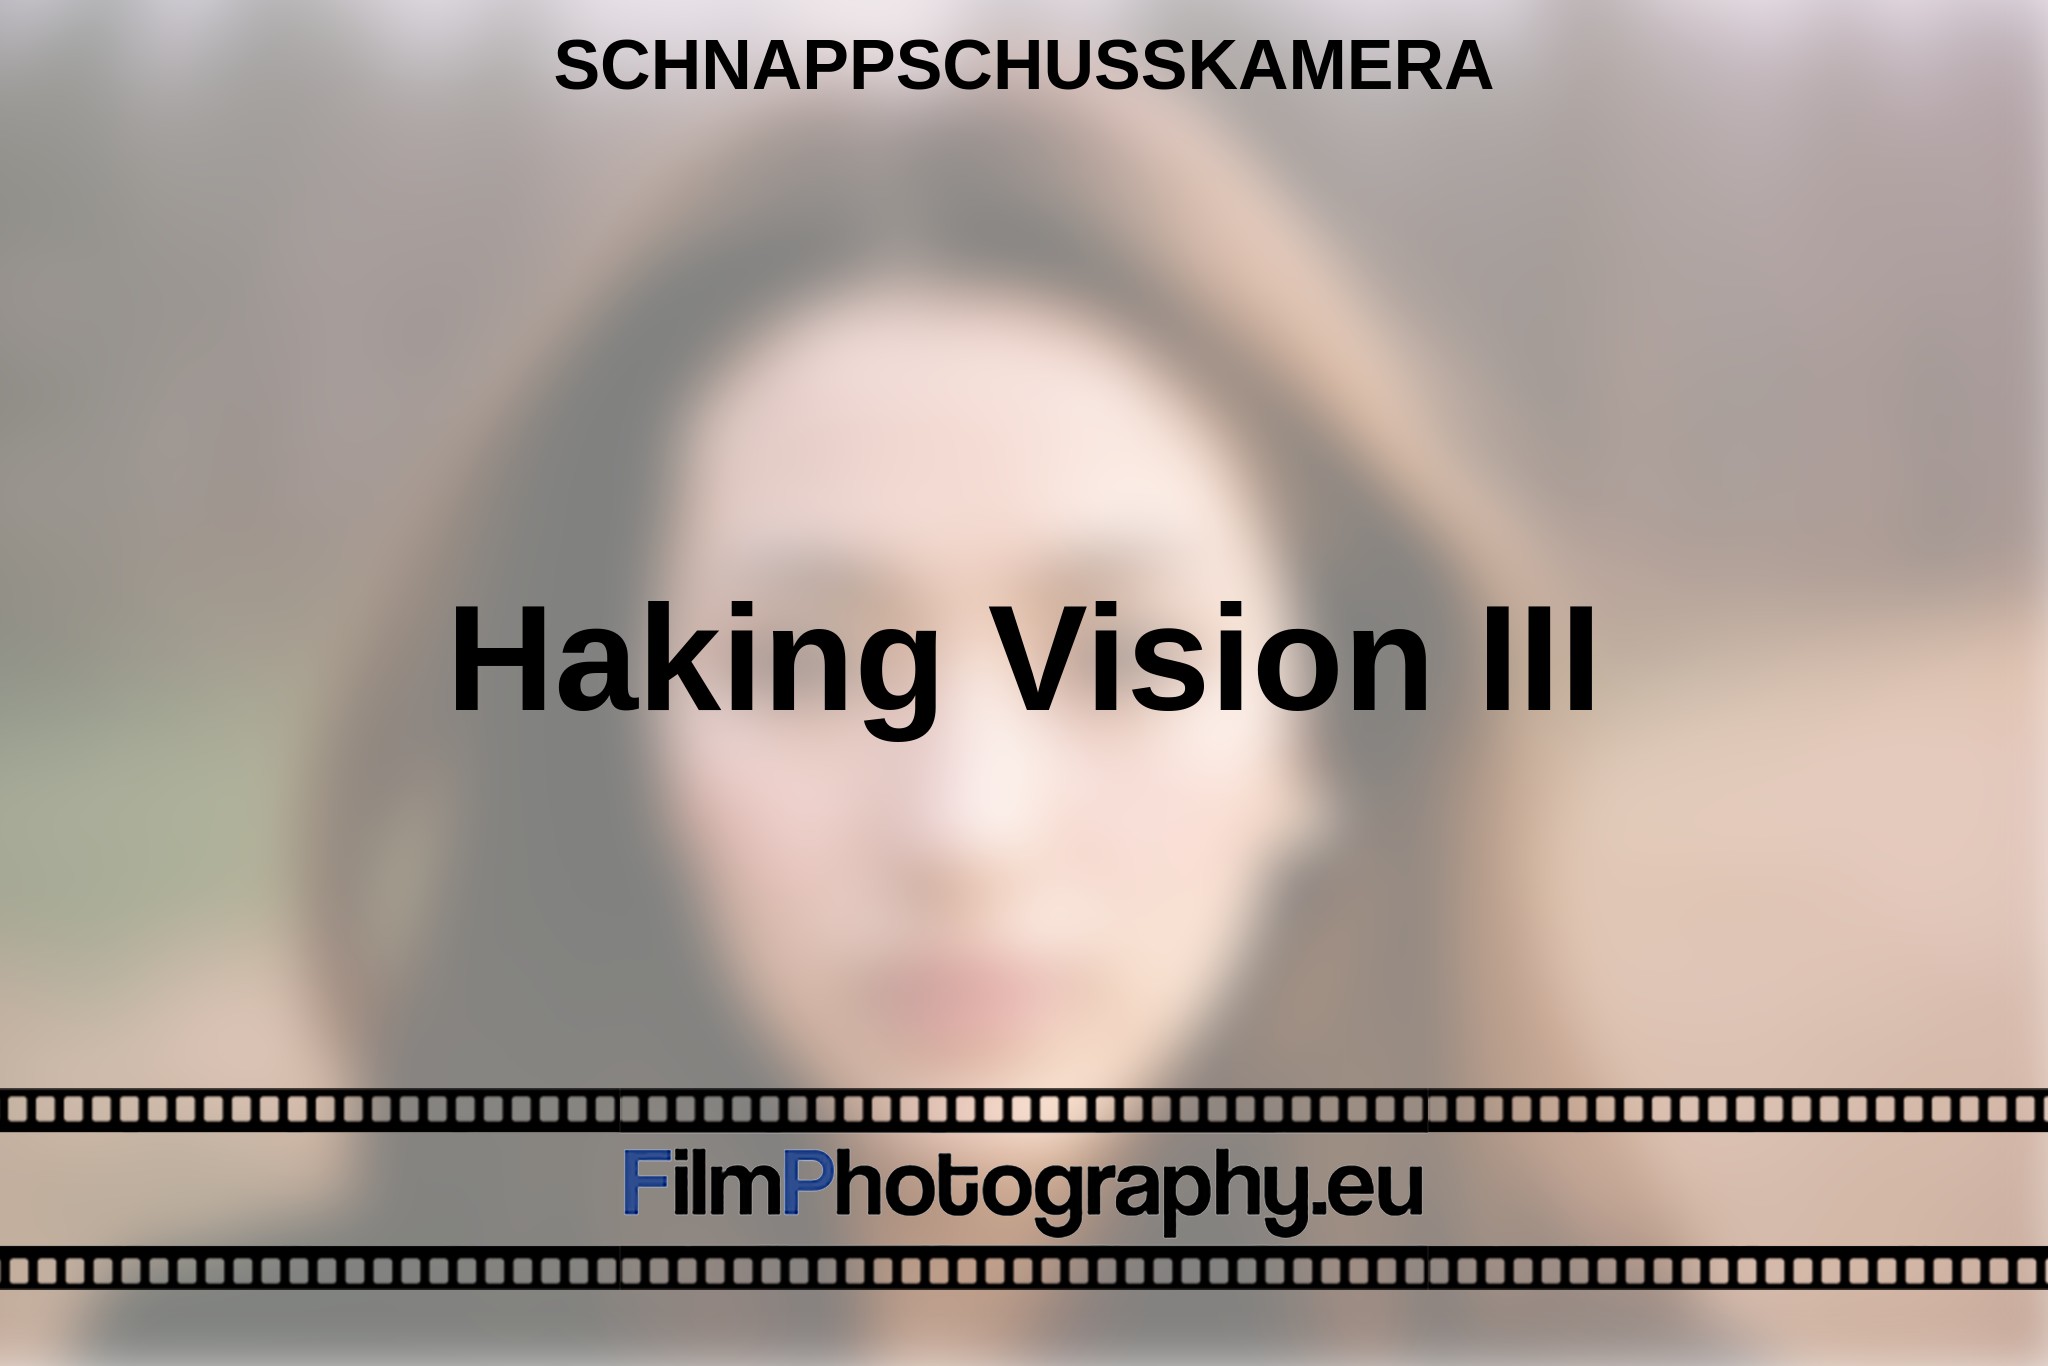 haking-vision-iii-schnappschusskamera-bnv.jpg